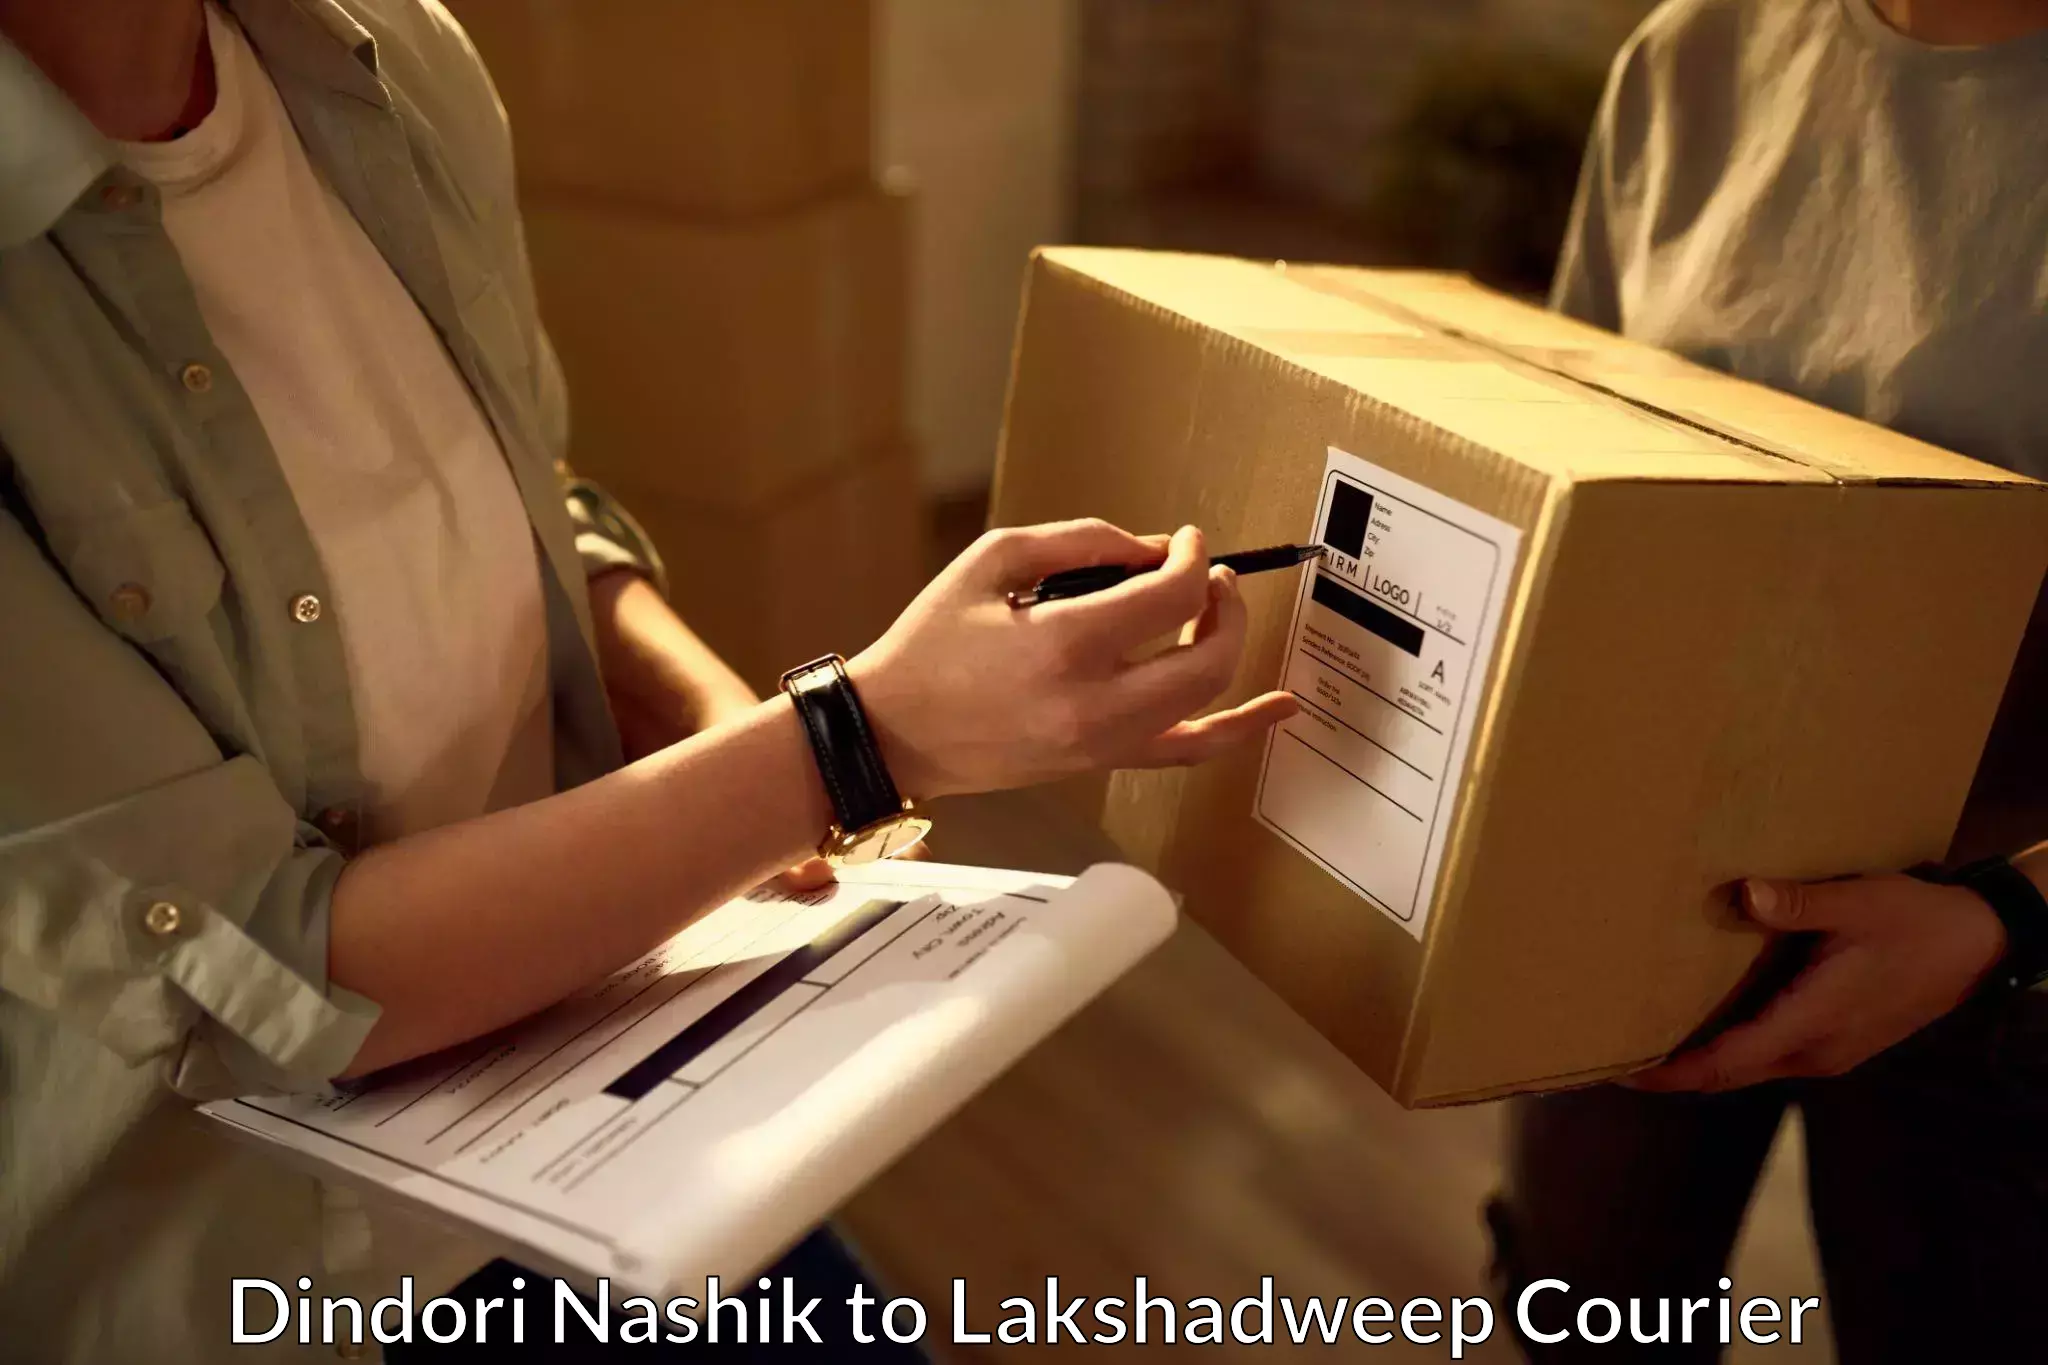 Individual parcel service Dindori Nashik to Lakshadweep